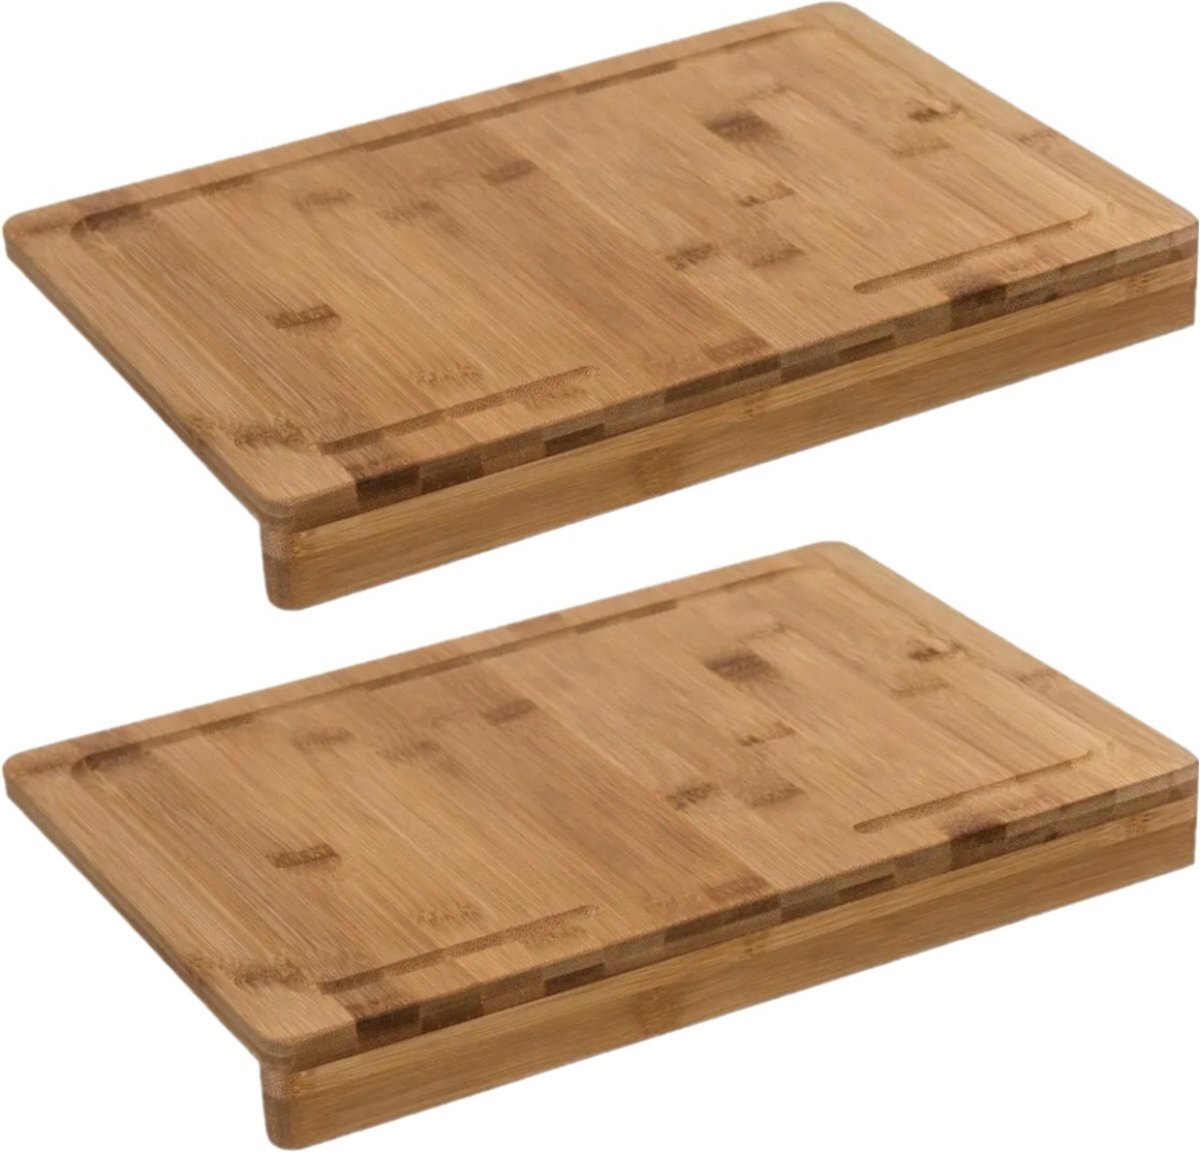 5five 2x Stuks snijplank met stoprand 35 x 24 cm van bamboe hout - Broodplank